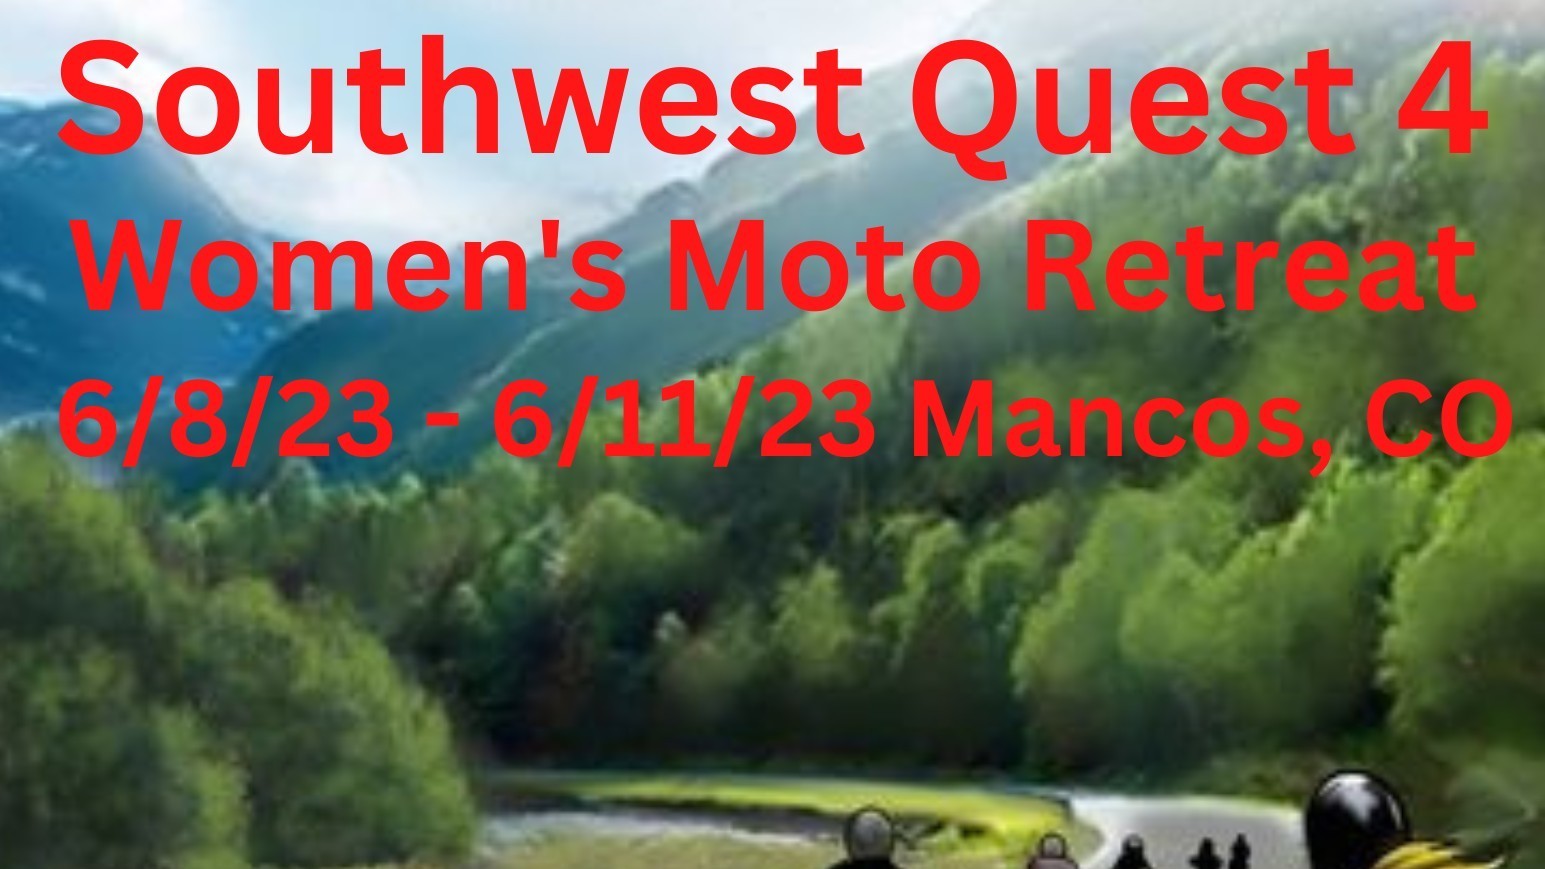 Southwest Quest 4 Women's Moto Retreat - Mancos, CO